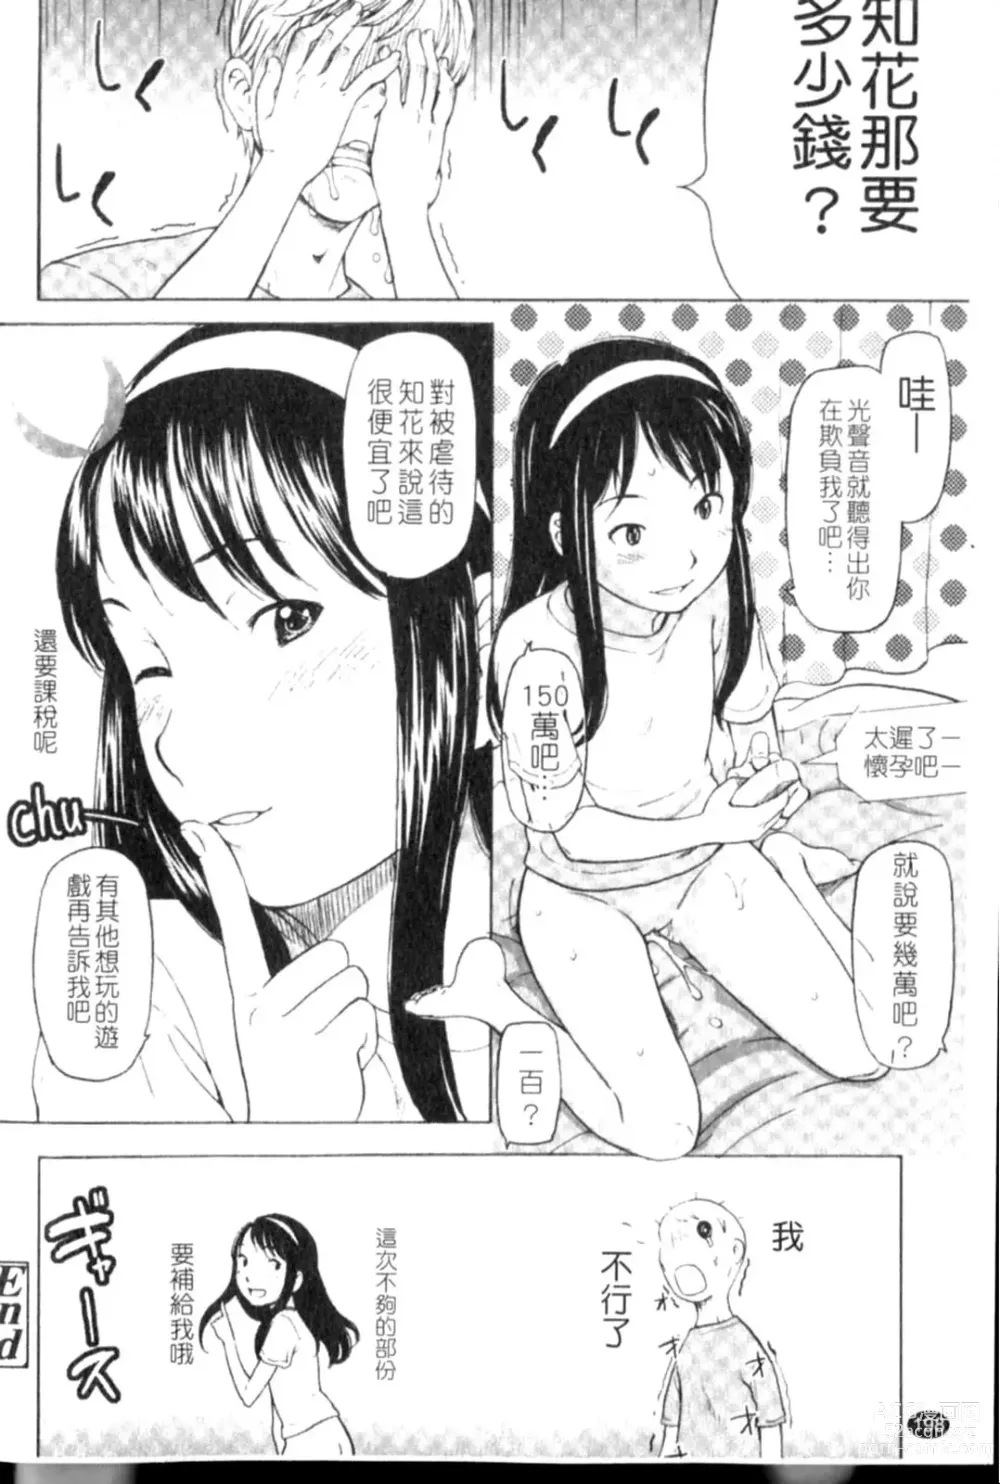 Page 198 of manga Porno Graffitti